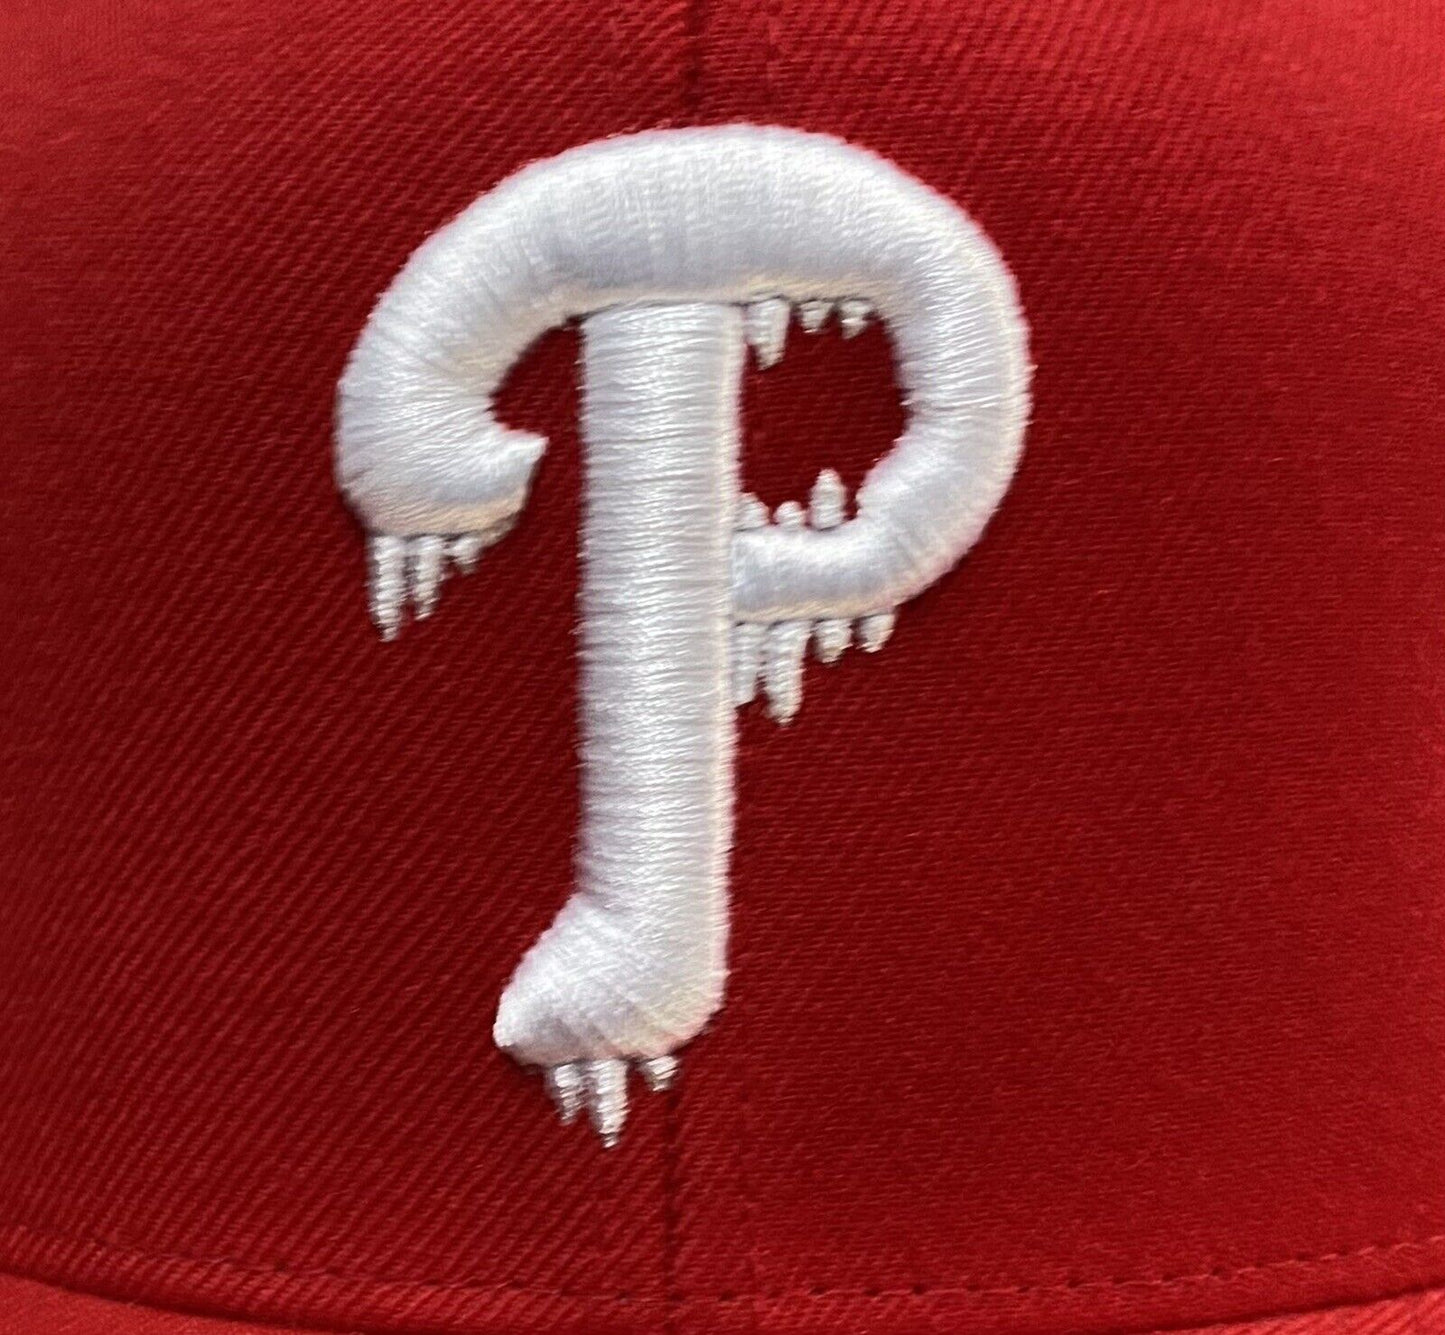 NEW Philadelphia Phillies Capn On Melrose SnapBack Hat  Red Phili Baseball Cap